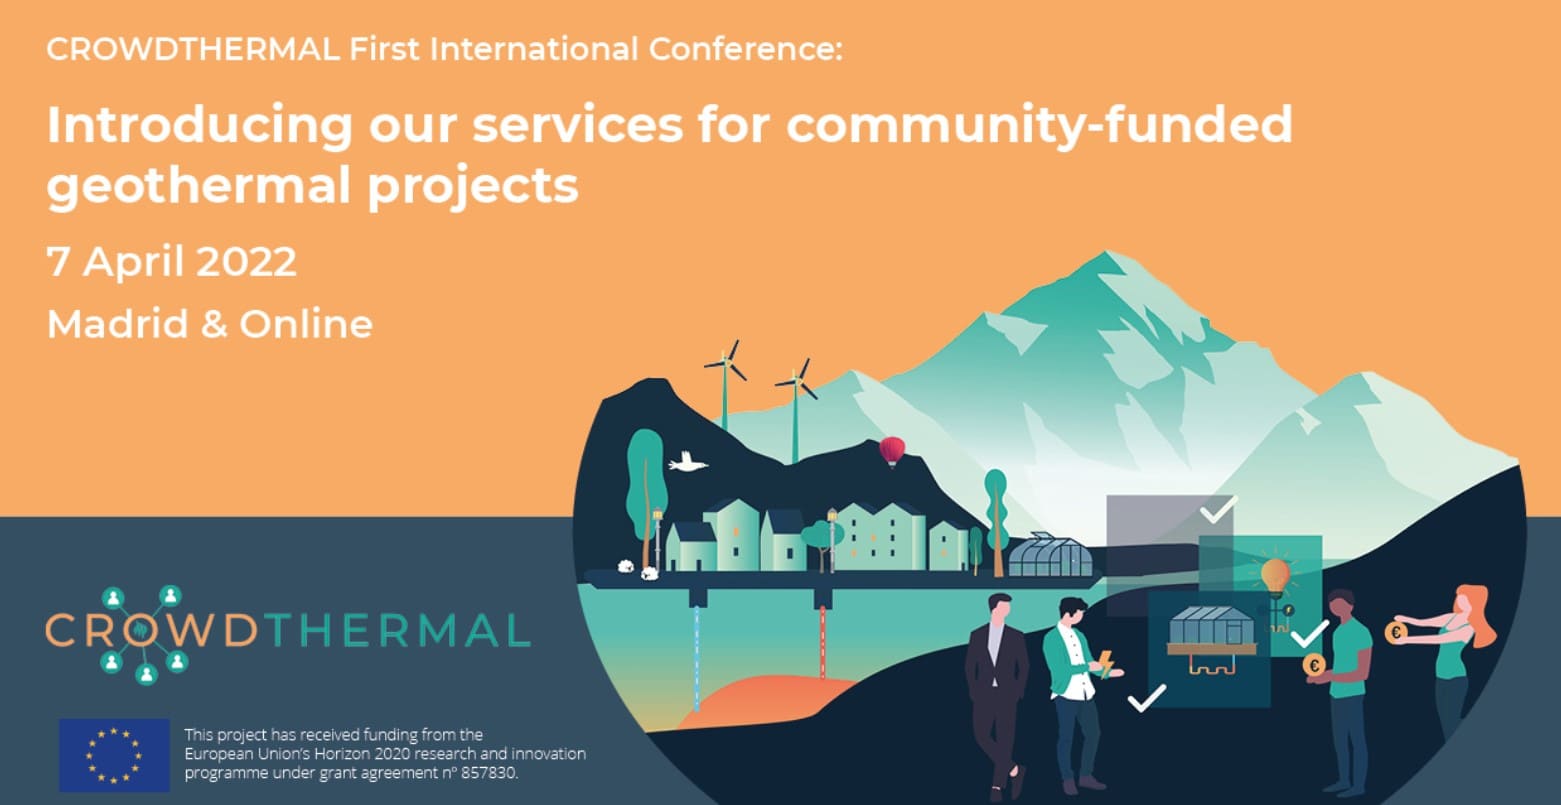 Mednarodna konferenca CrowdThermal_Predstavljamo naše storitve za feotermalne projekte, ki jih financira skupnost - CrowdfundingHub